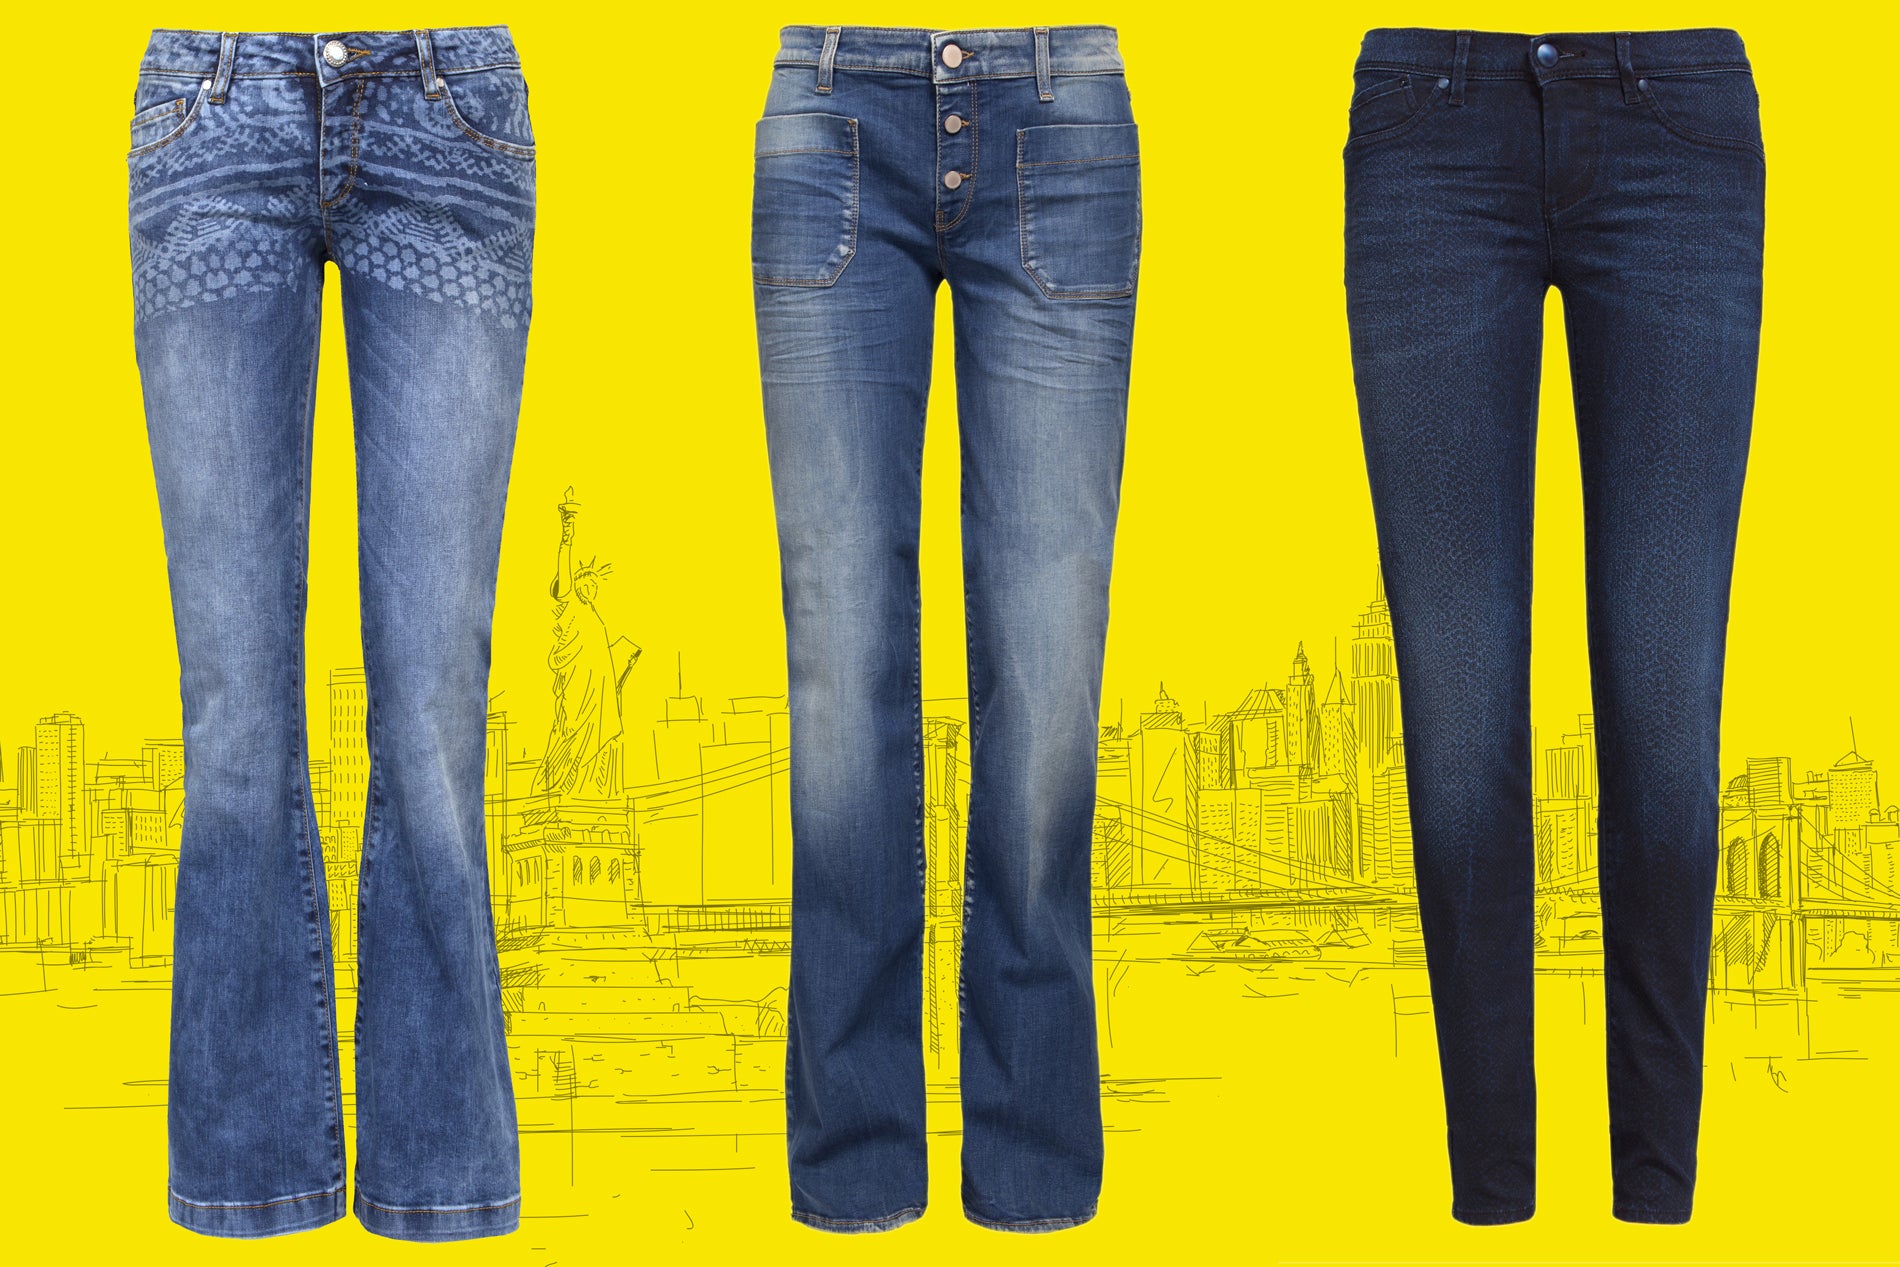 Women's Denim Jeans Innovation